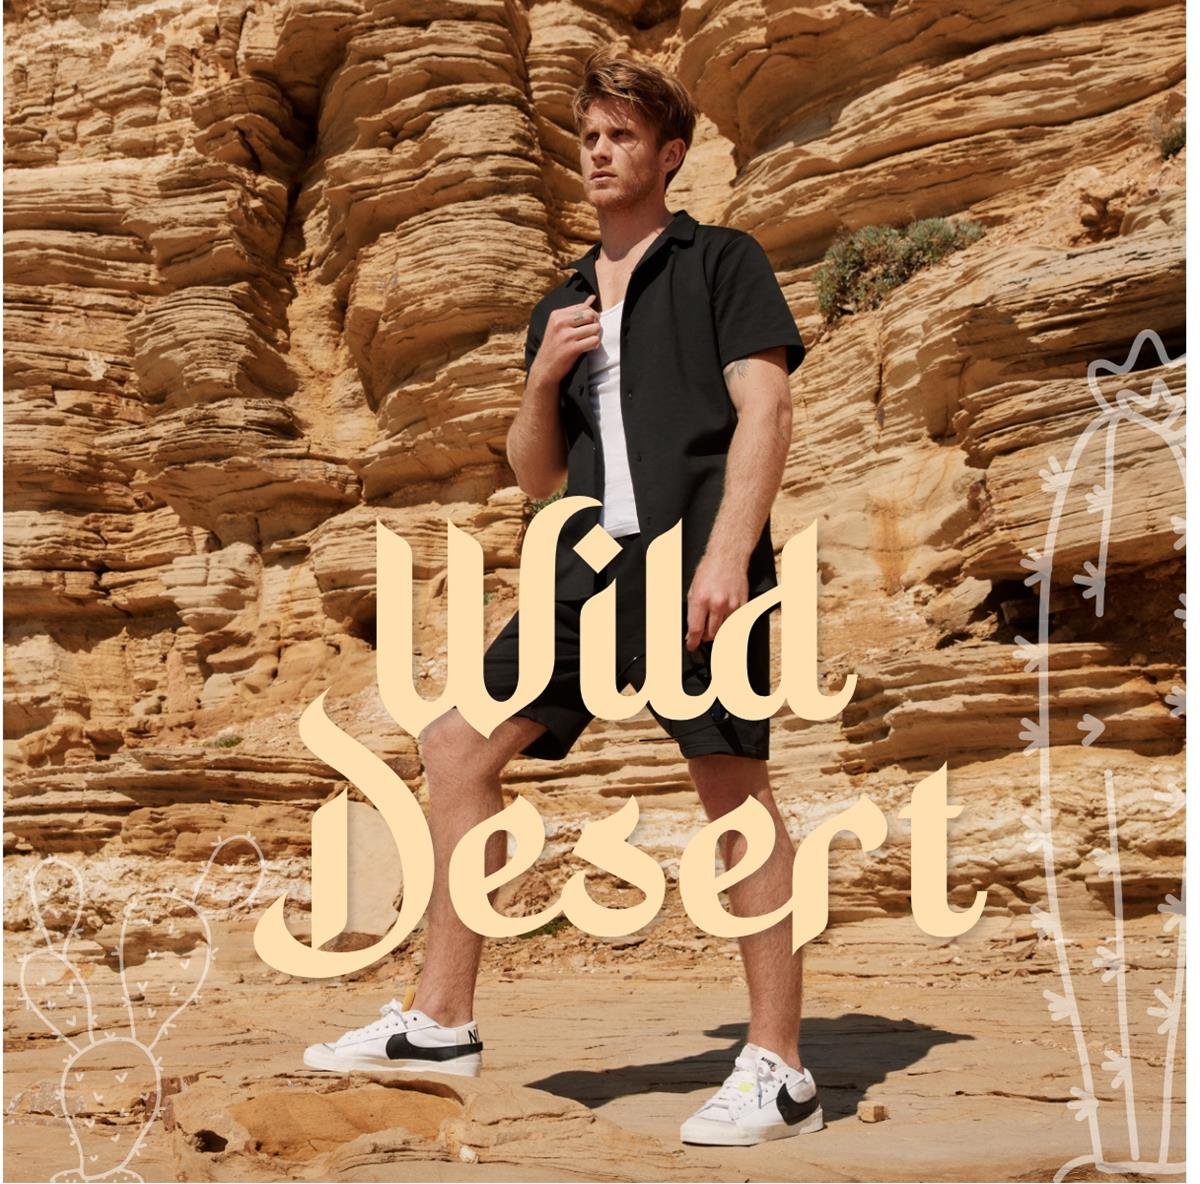 Wild desert